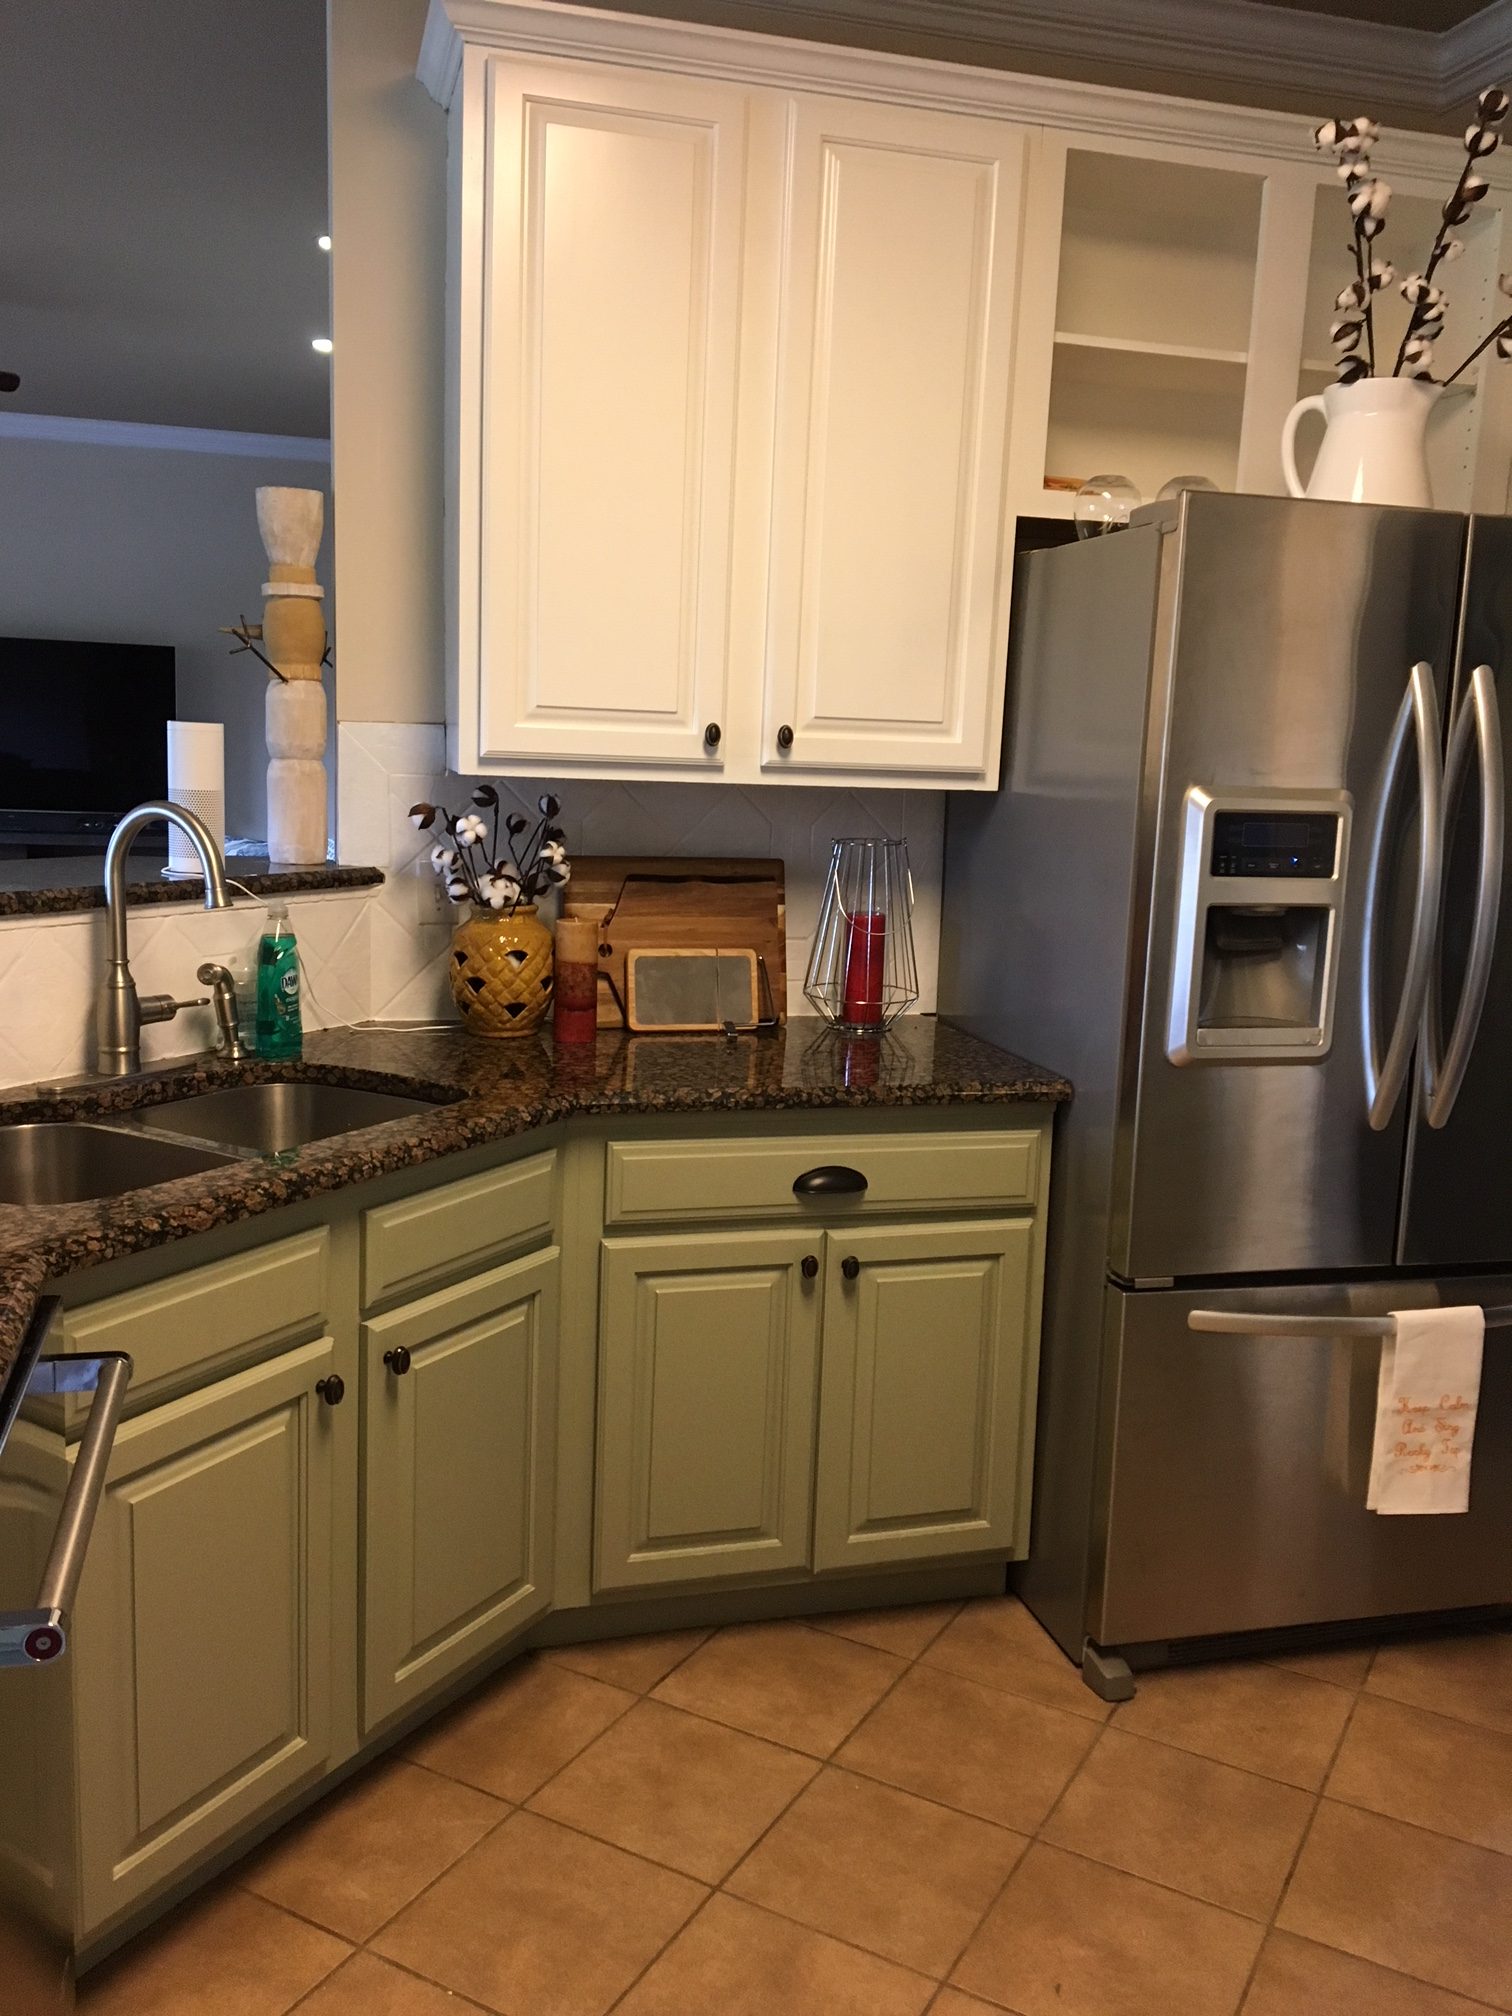  kitchen cabinet resurface